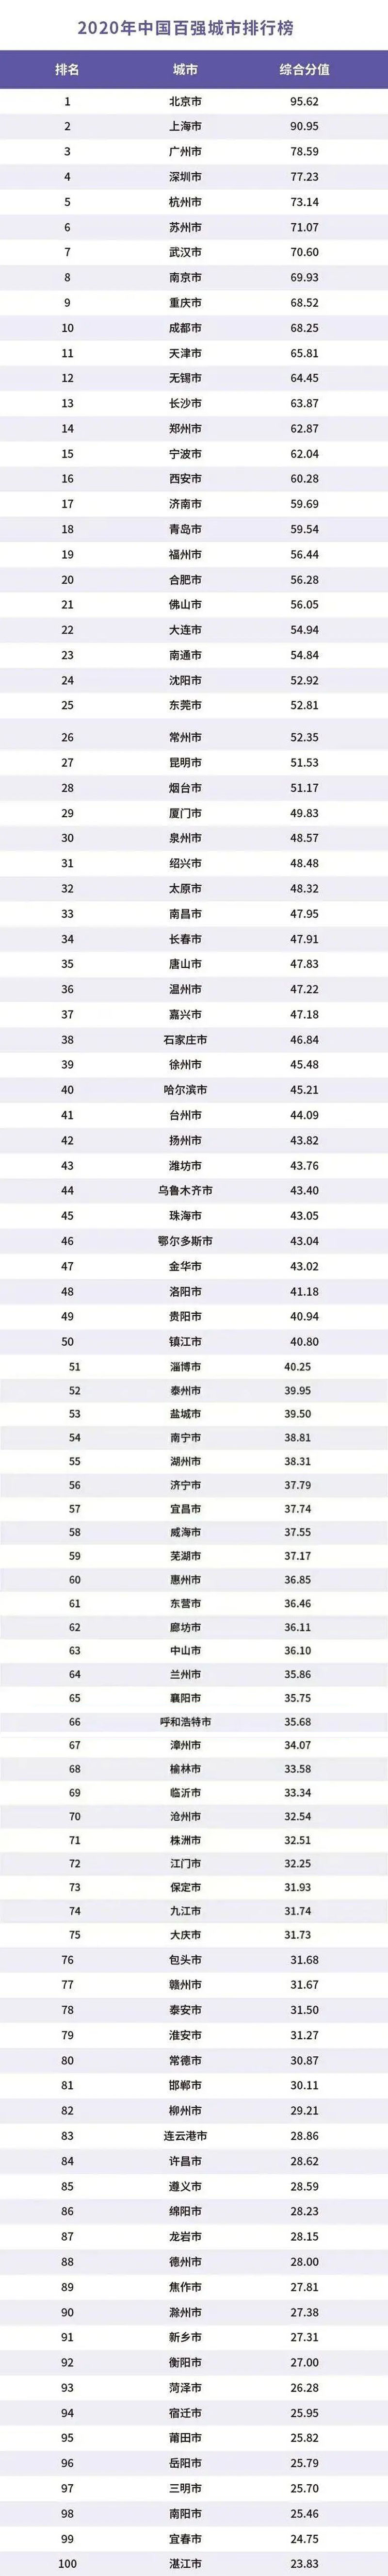 中国最强的100座城都是谁 2020年中国百强城市排行榜